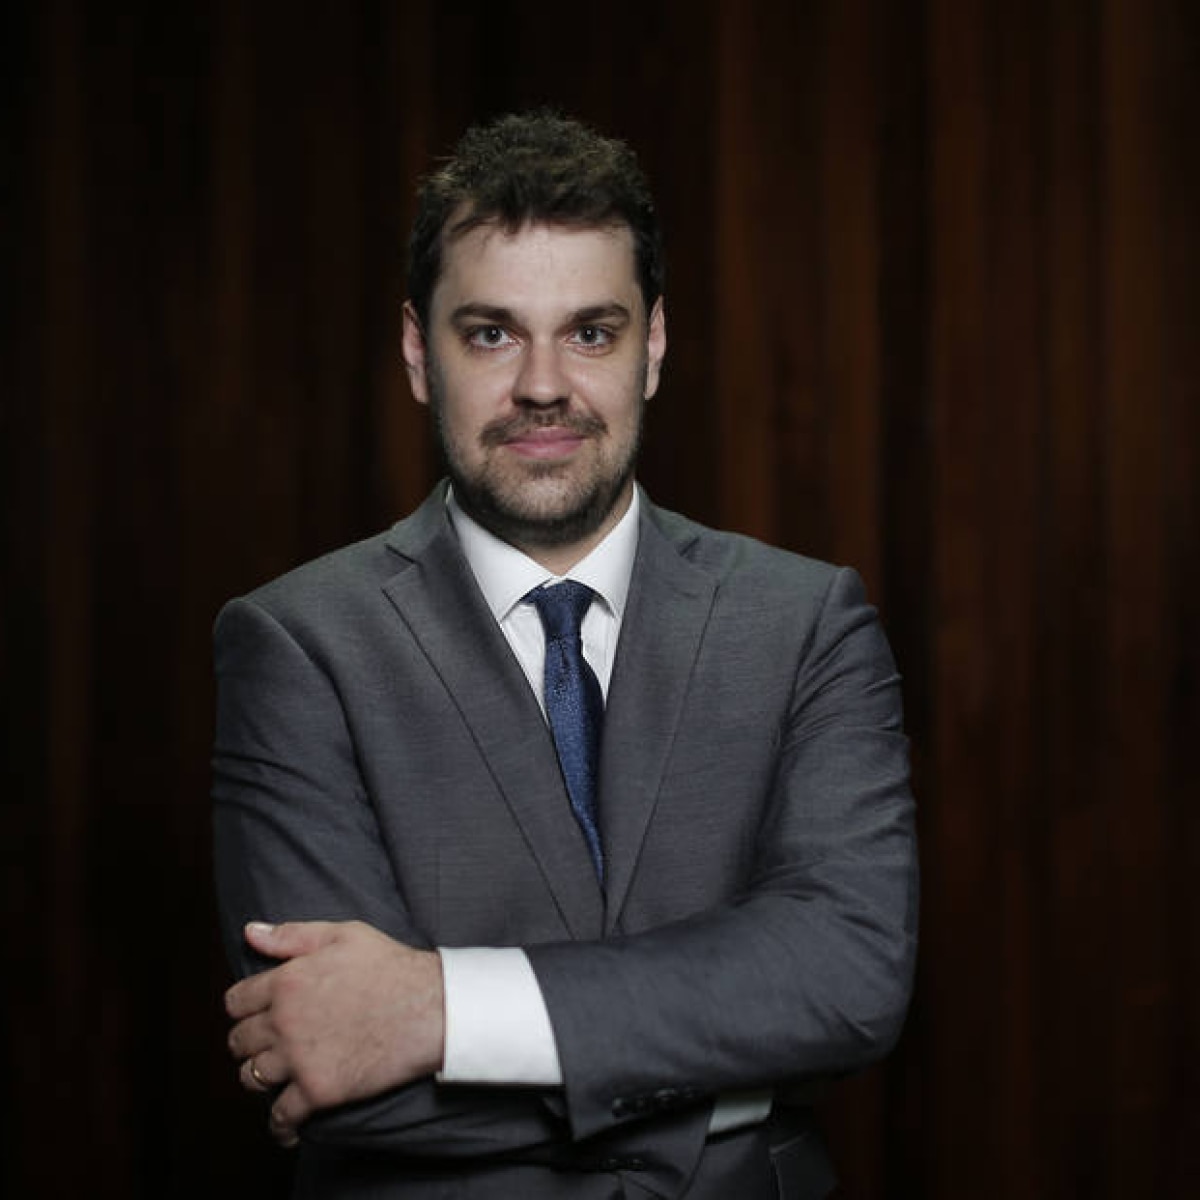 Pedro Fernando Nery estreia coluna semanal no 'Estado' - Economia ...